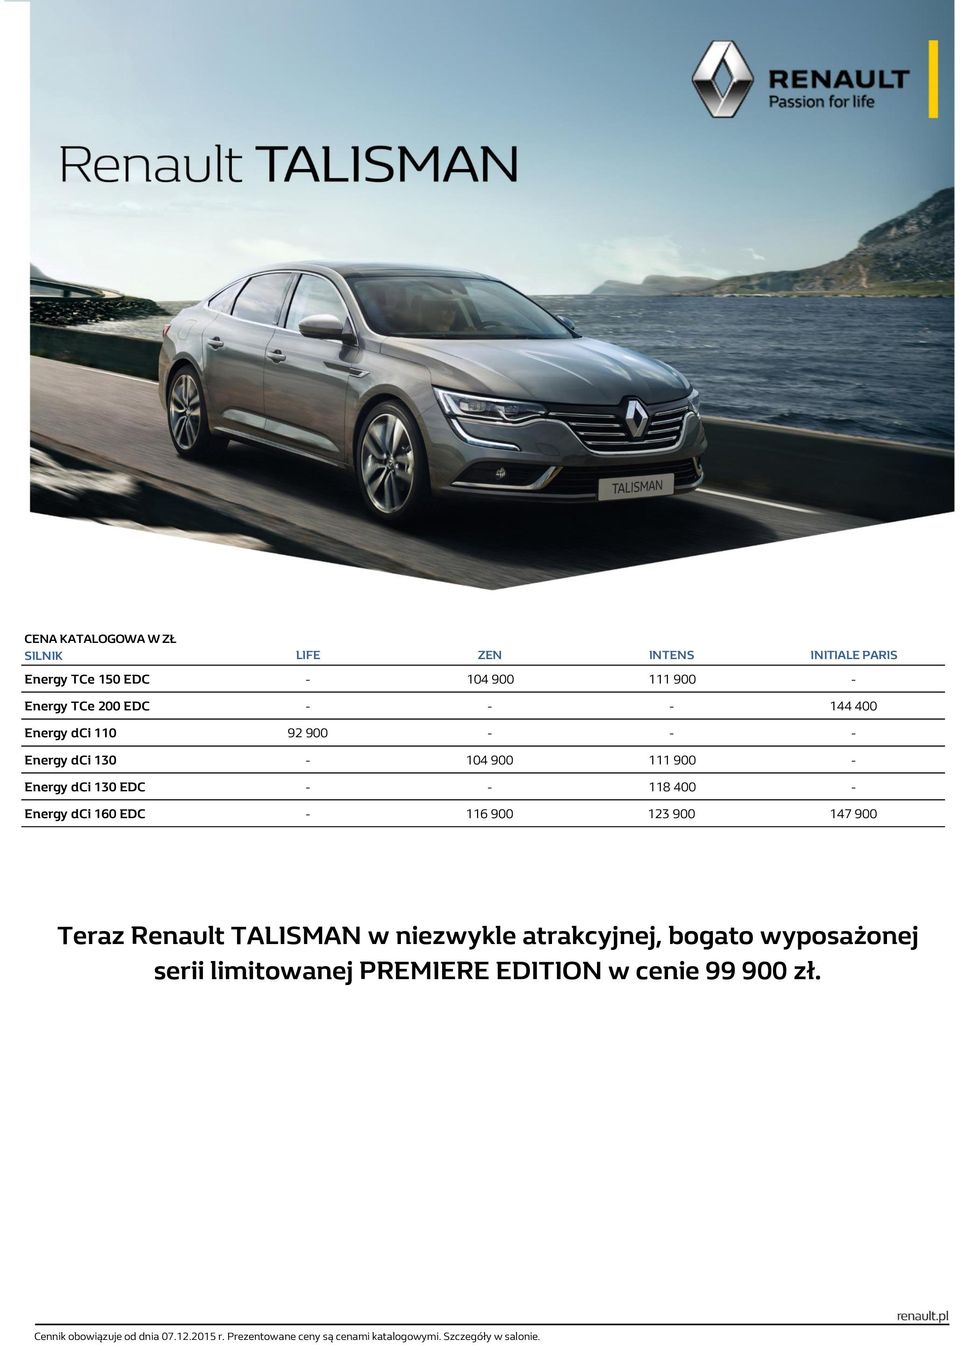 900 Teraz Renault TALISMAN w niezwykle atrakcyjnej, bogato wyposażonej serii limitowanej PREMIERE EDITION w